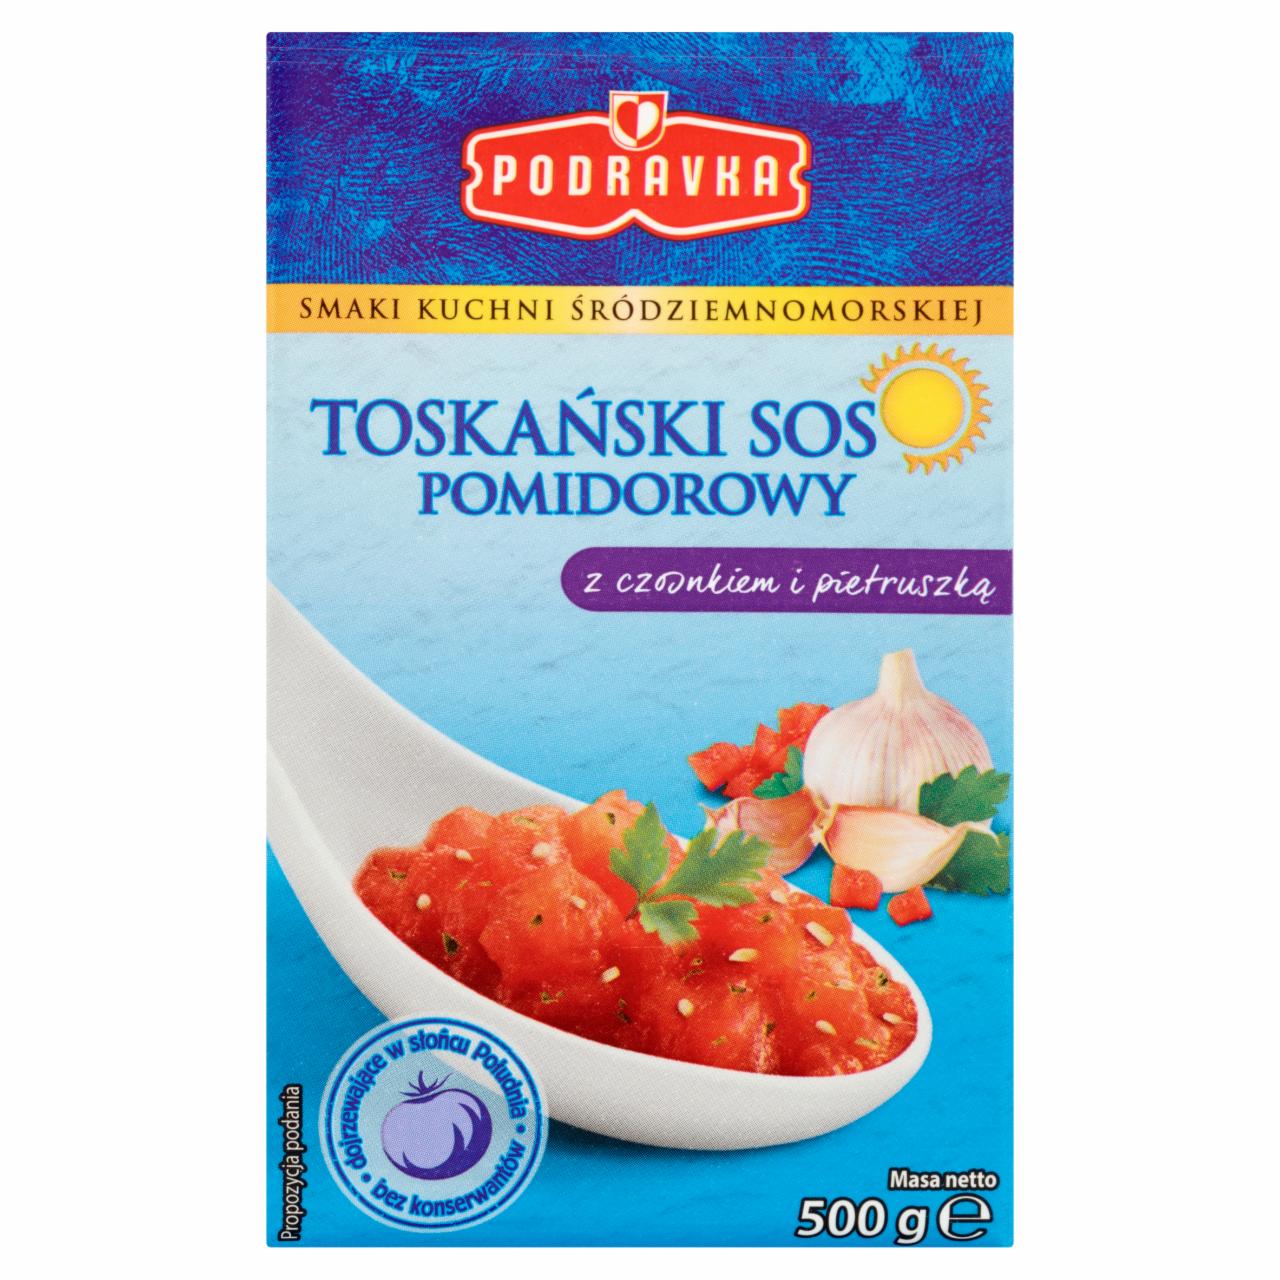 Zdjęcia - Podravka Toskański sos pomidorowy z czosnkiem i pietruszką 500 g